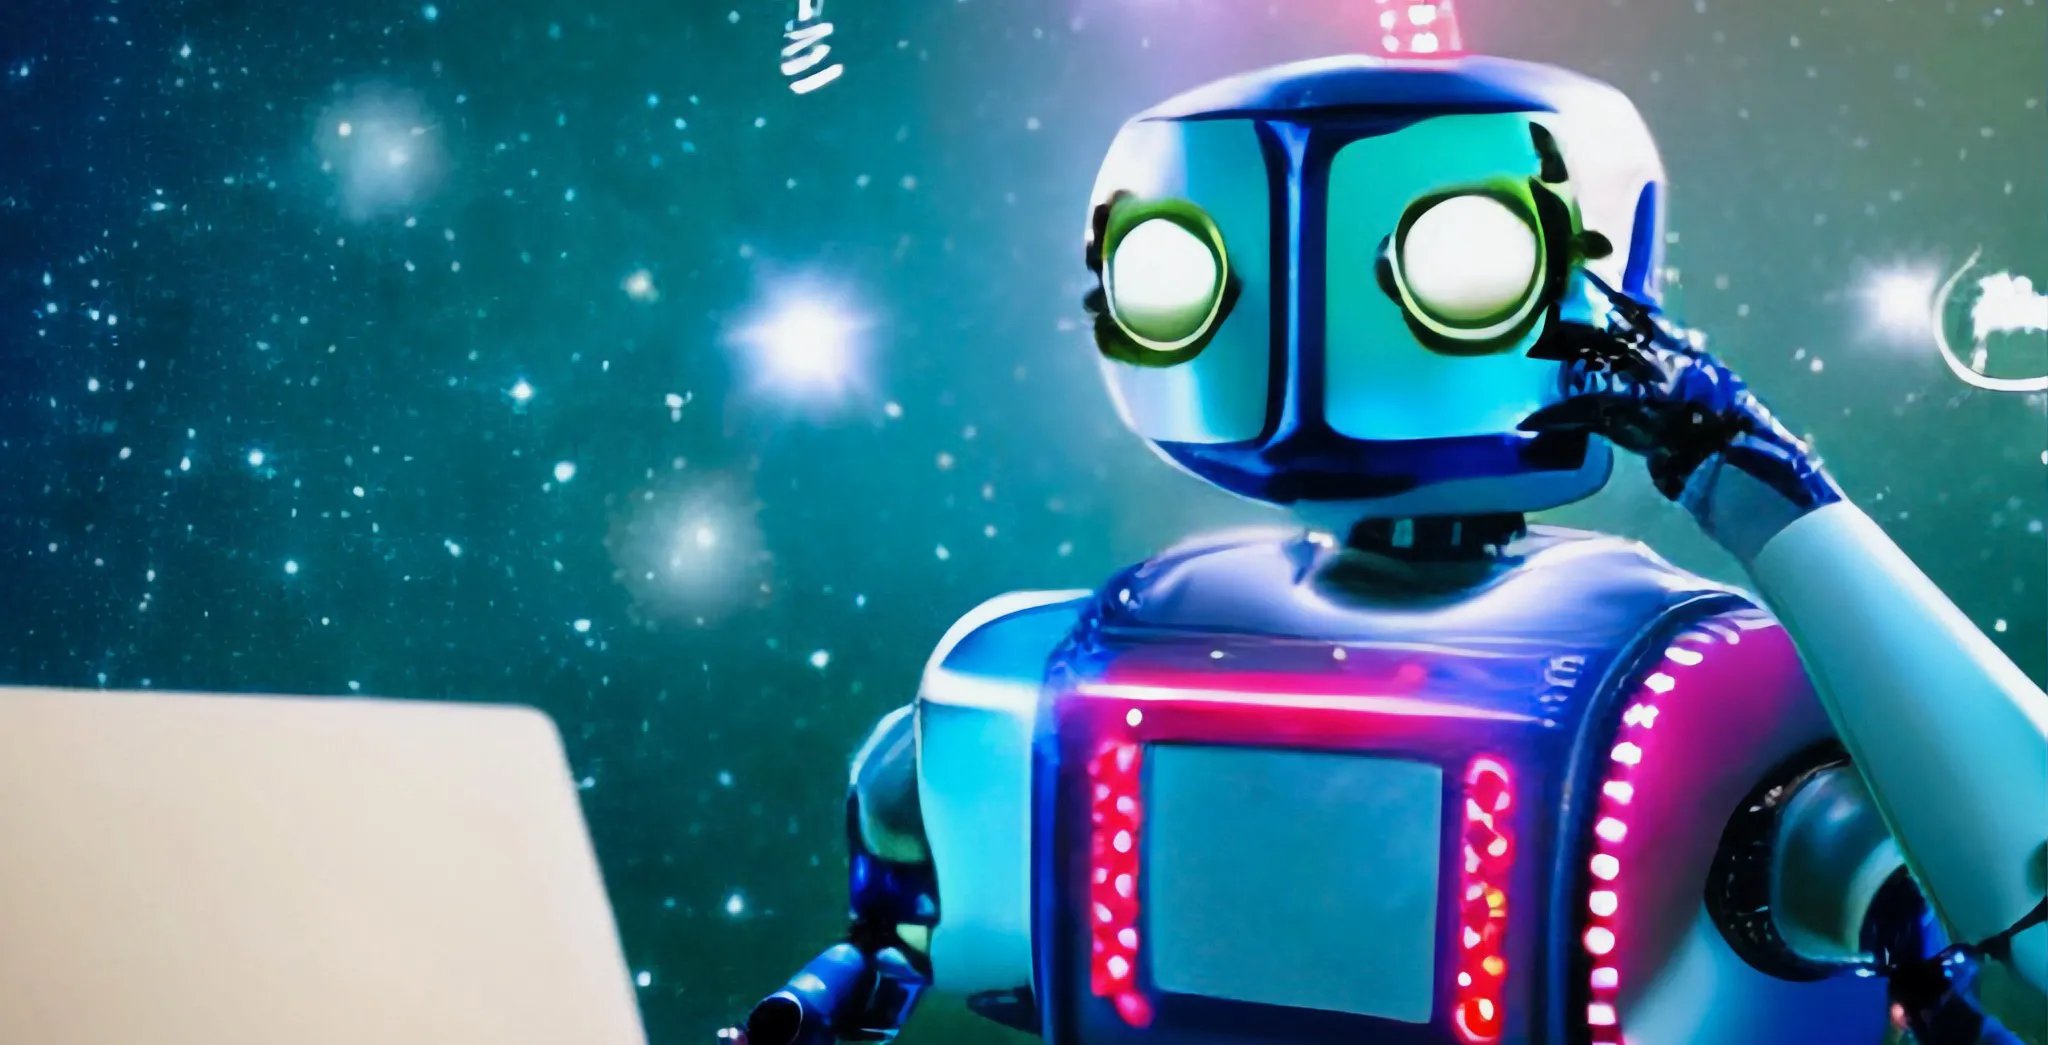 Roboter in blau und pink fasst sich denkend an den Kopf aufgrund des Conversionzaubers durch KI